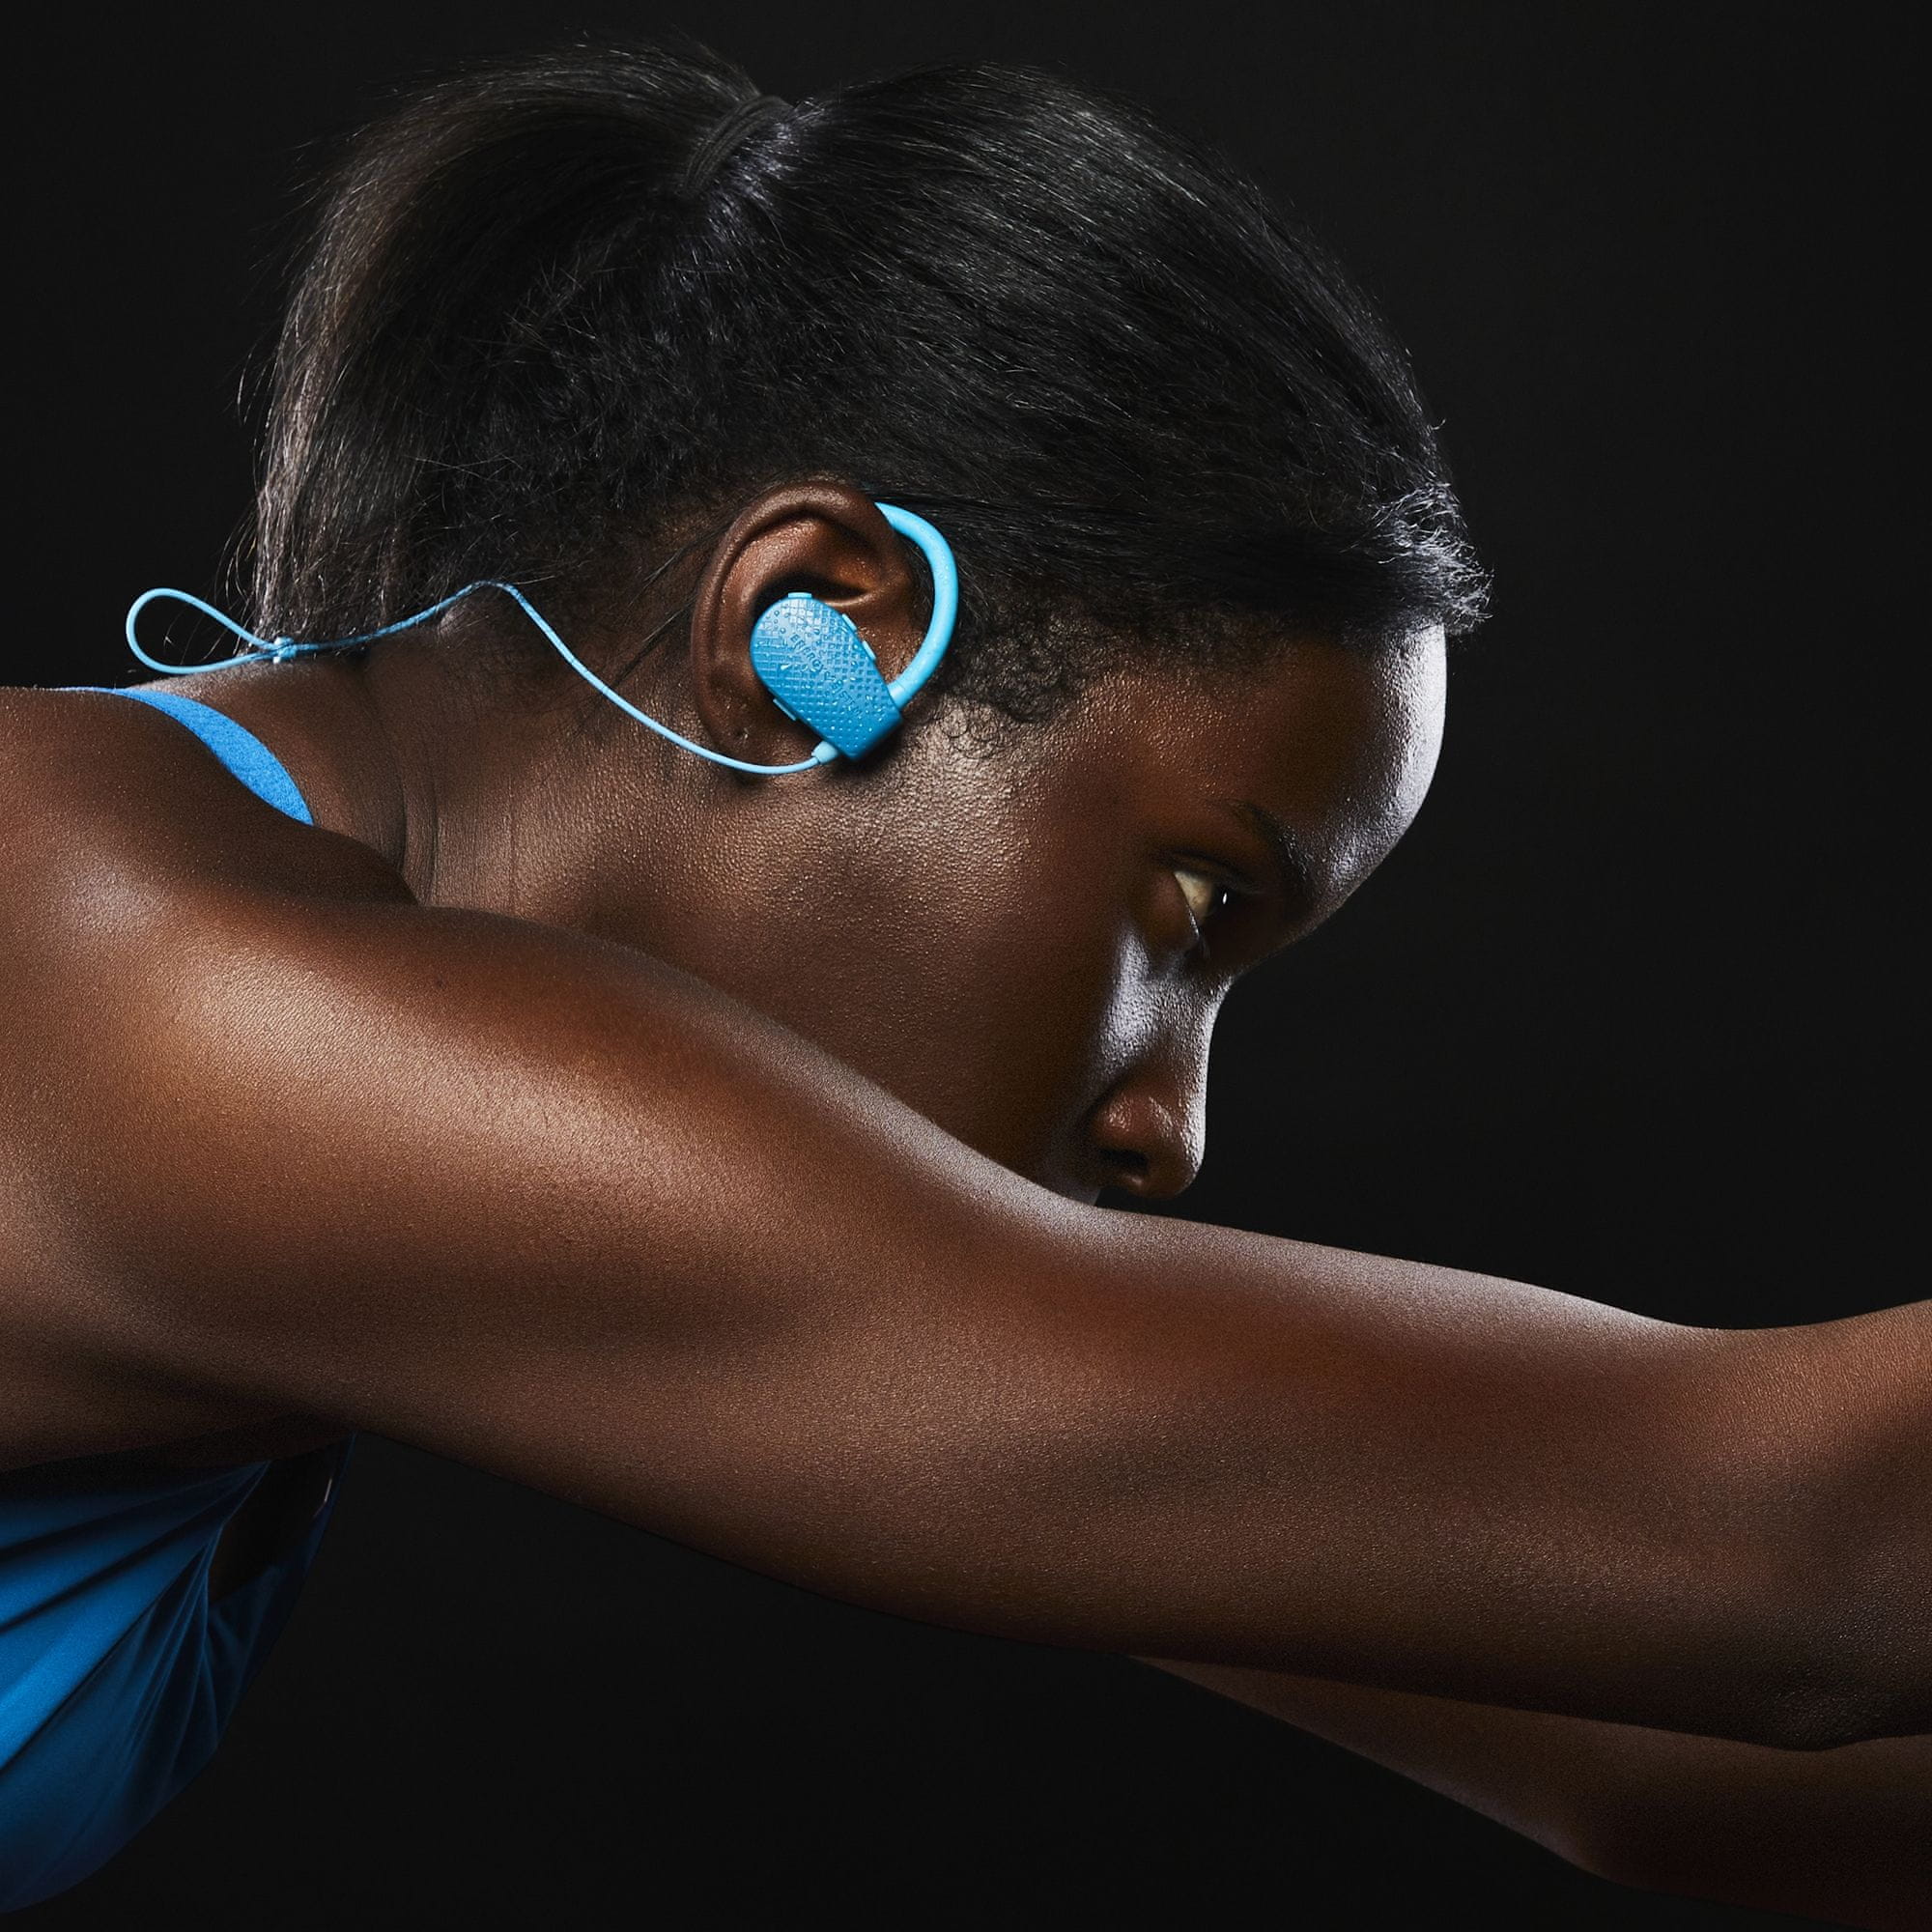  stylová Bluetooth sluchátka do uší energy sistem earphones Bluetooth sport 1 usb-c nabíjení kabel za krkem špunty do uší tlačítka pro ovládání odolná vodě výkonné měniče secure fit upevnění v uších 